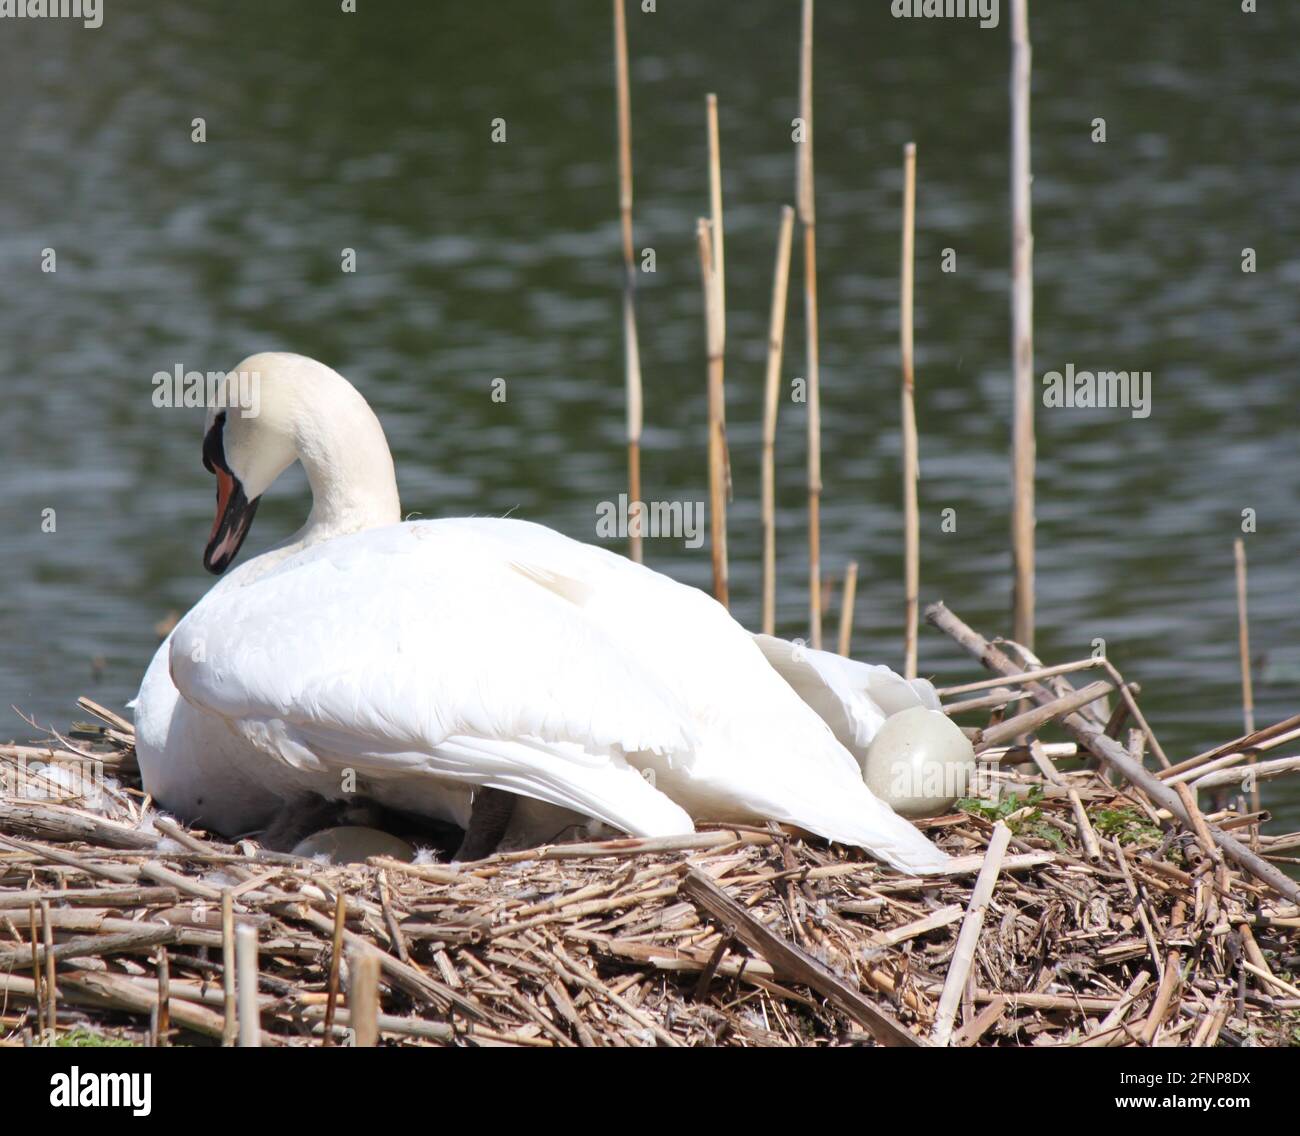 Einsamer Schwan, der während der Brutzeit im Nest sitzt. Cygnus olor brütet im Lebensraum. Großer weißer Wasservögel (Schnee), gefangen beim Nisting im öffentlichen Park, Großbritannien. Stockfoto